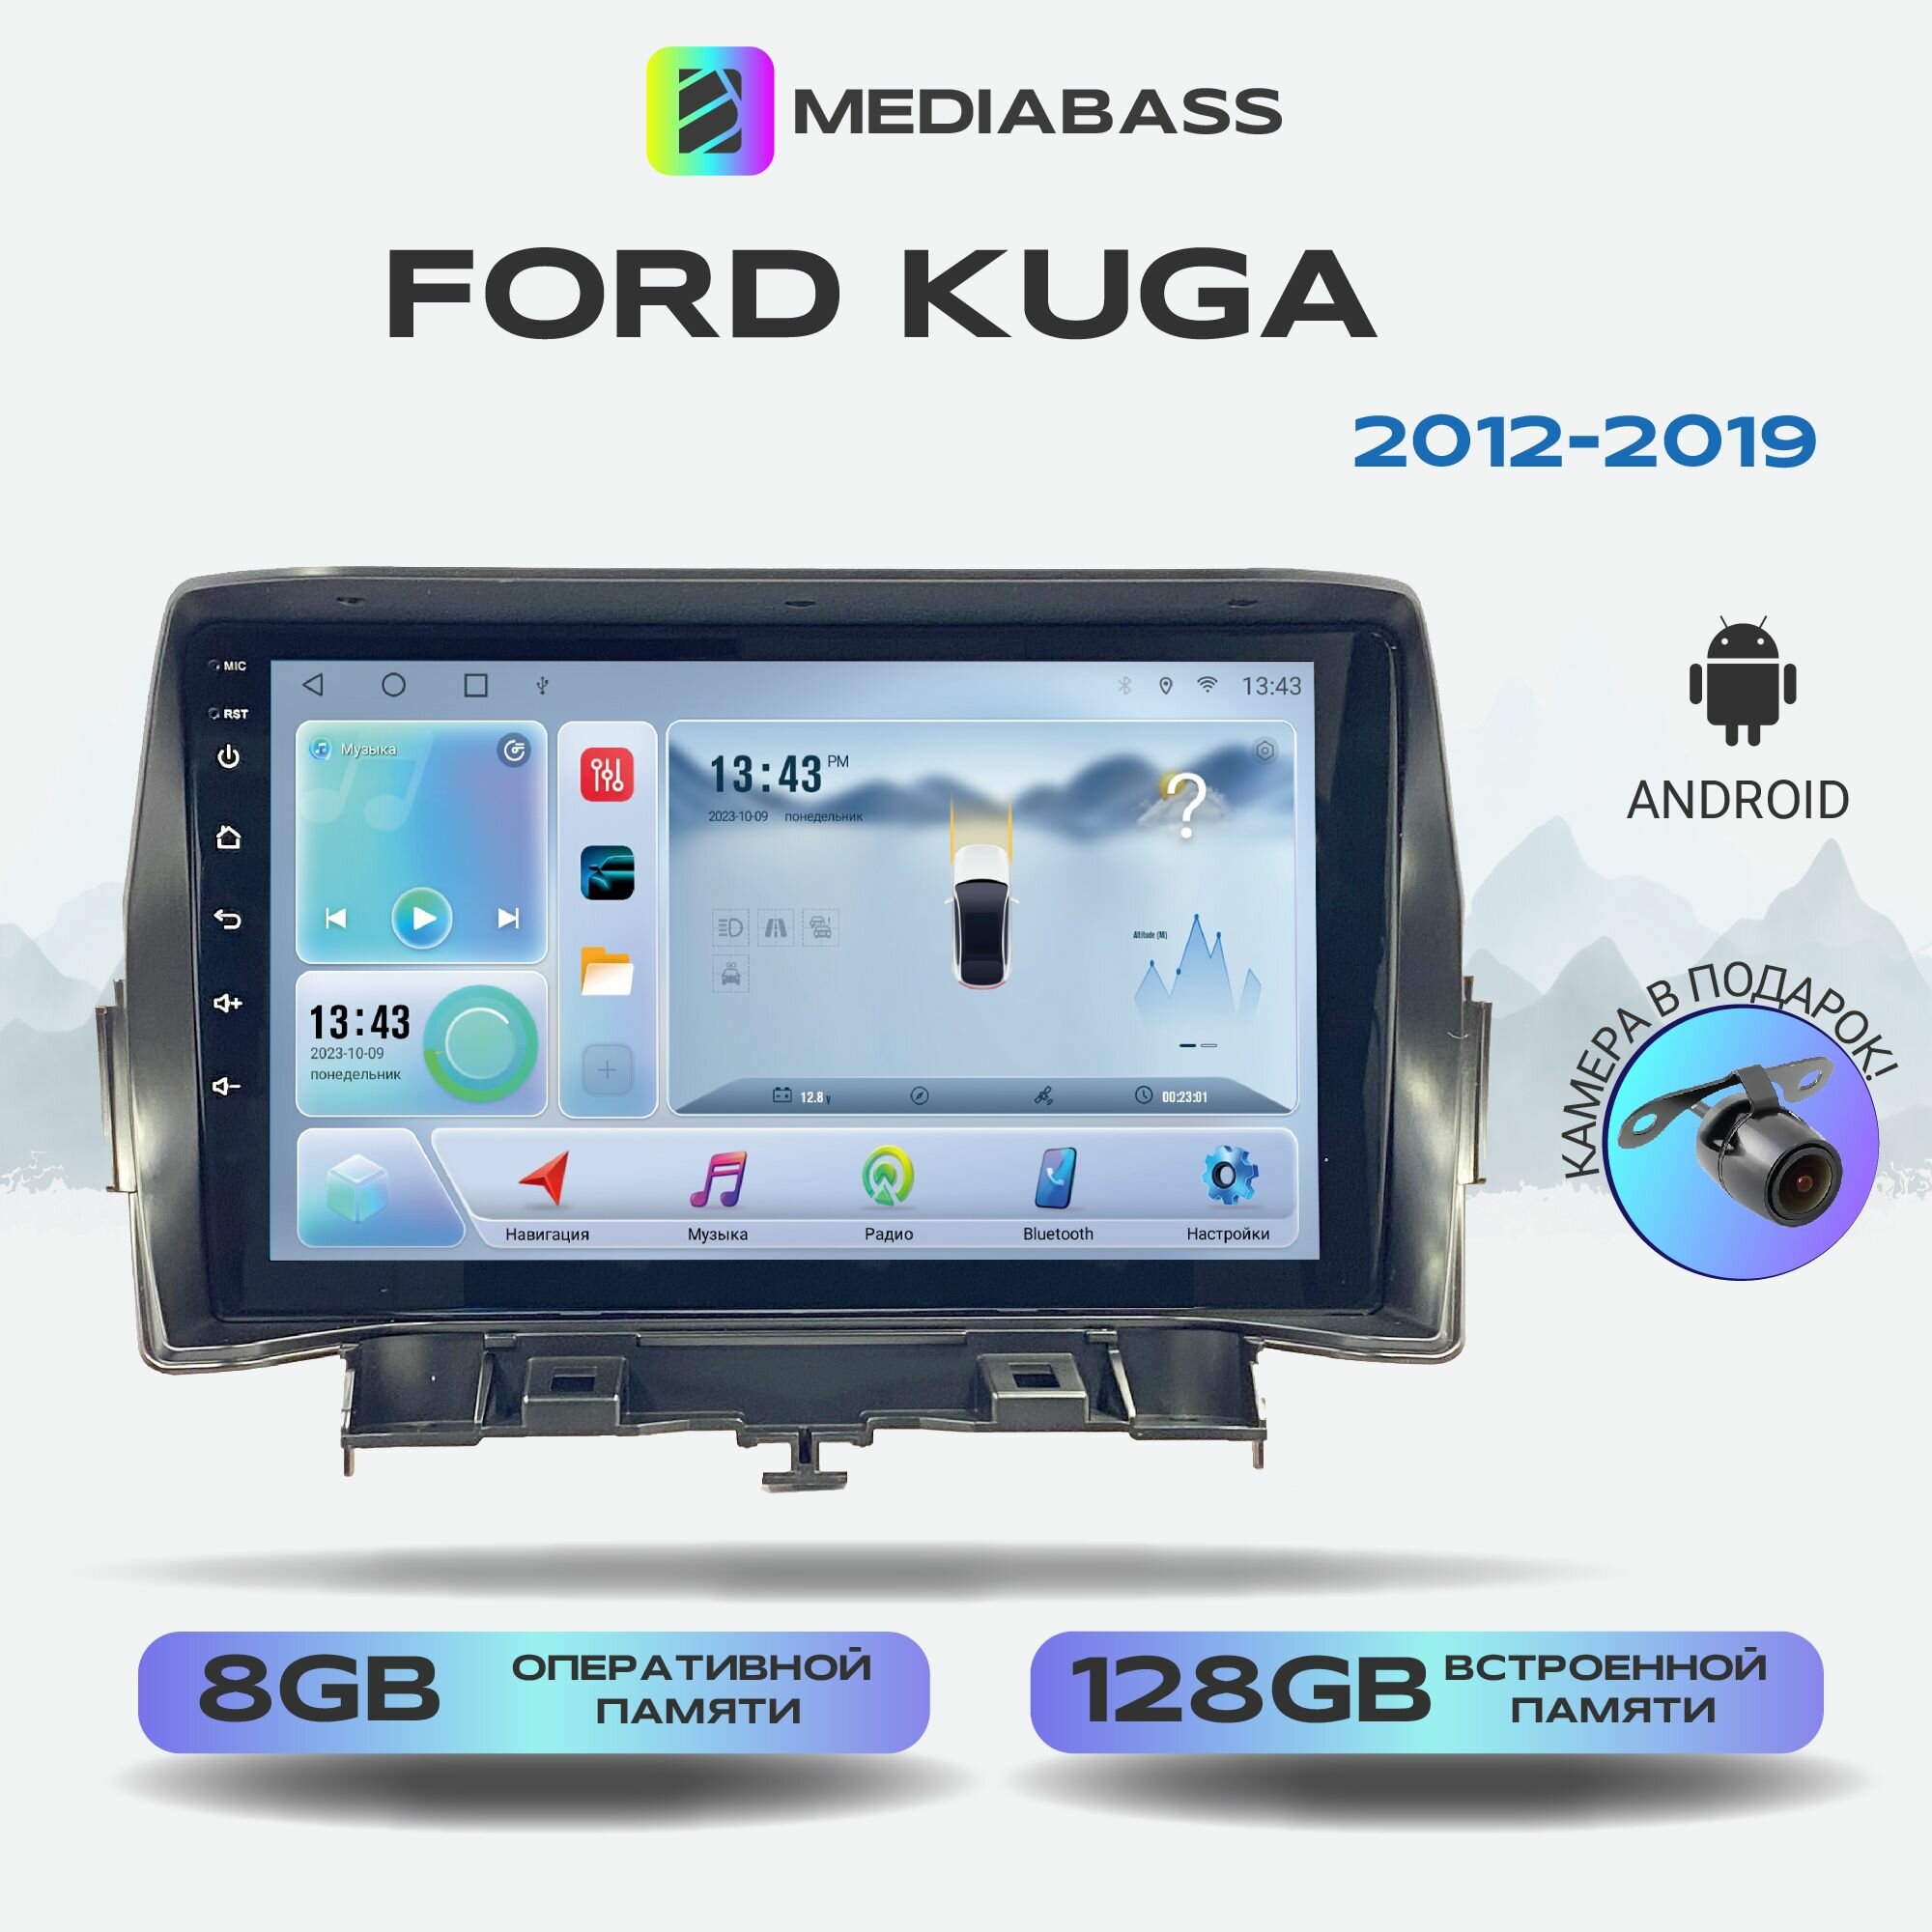 Автомагнитола Mediabass Ford Kuga 2012-2019, Android 12, 8/128ГБ, 8-ядерный процессор, DSP, 4G модем, голосовое управление, чип-усилитель TDA7851, 4G LTE / Форд Куга